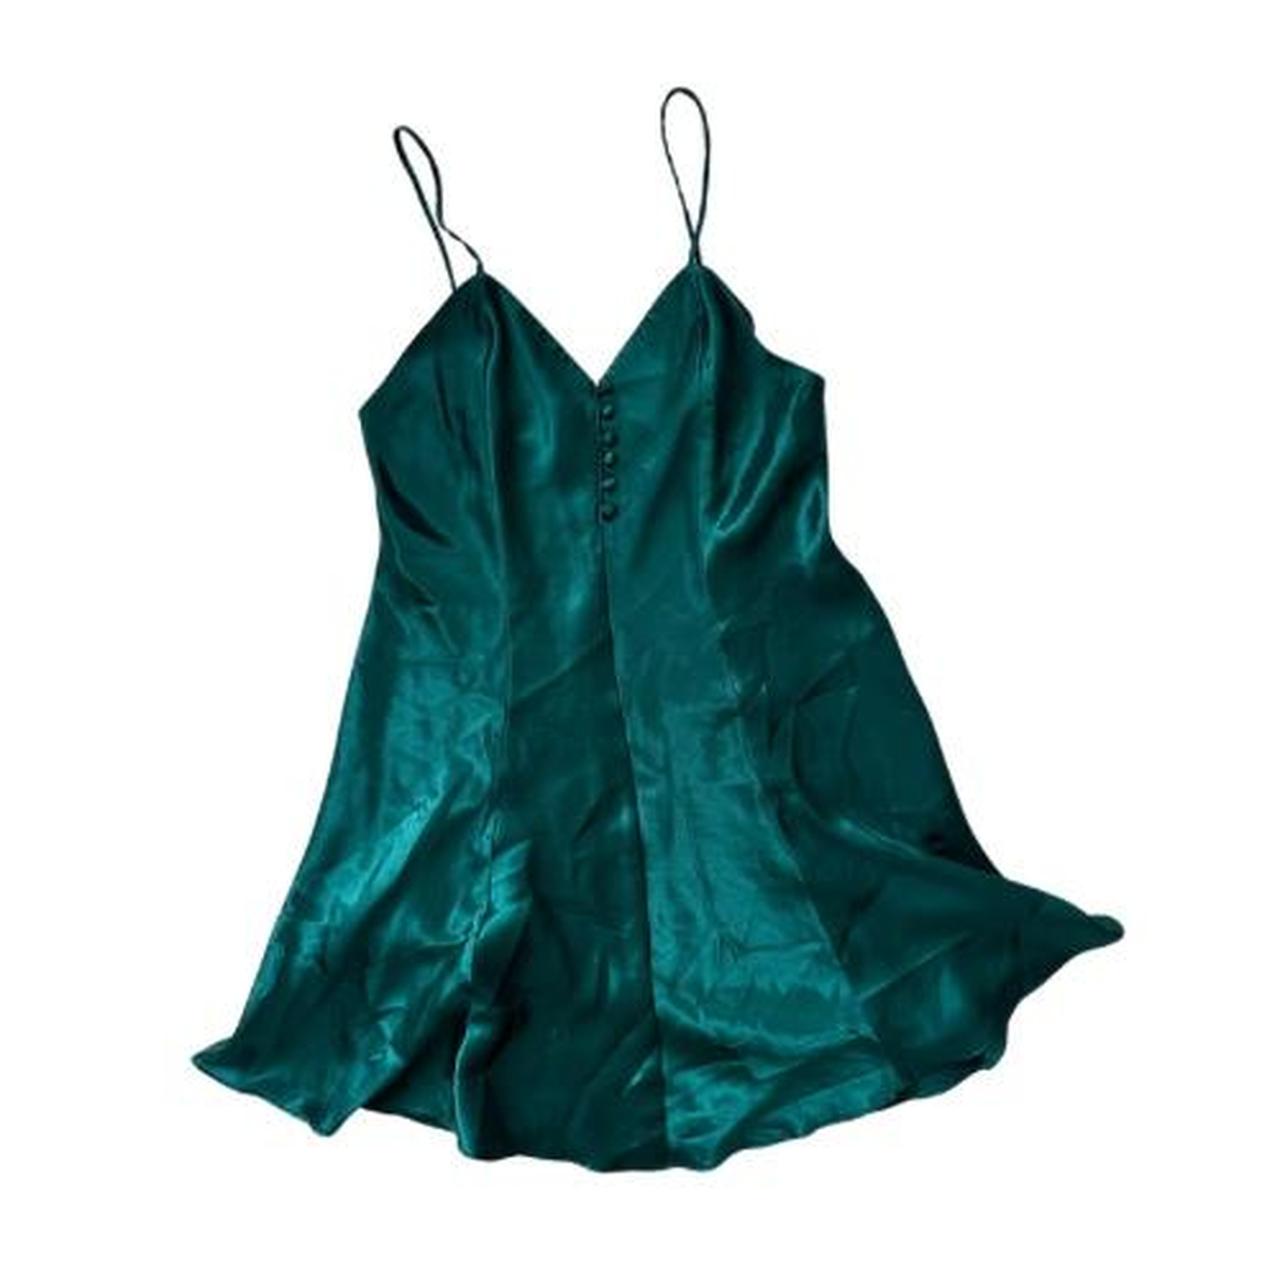 Vintage slip dress in a forest blue green! - Depop